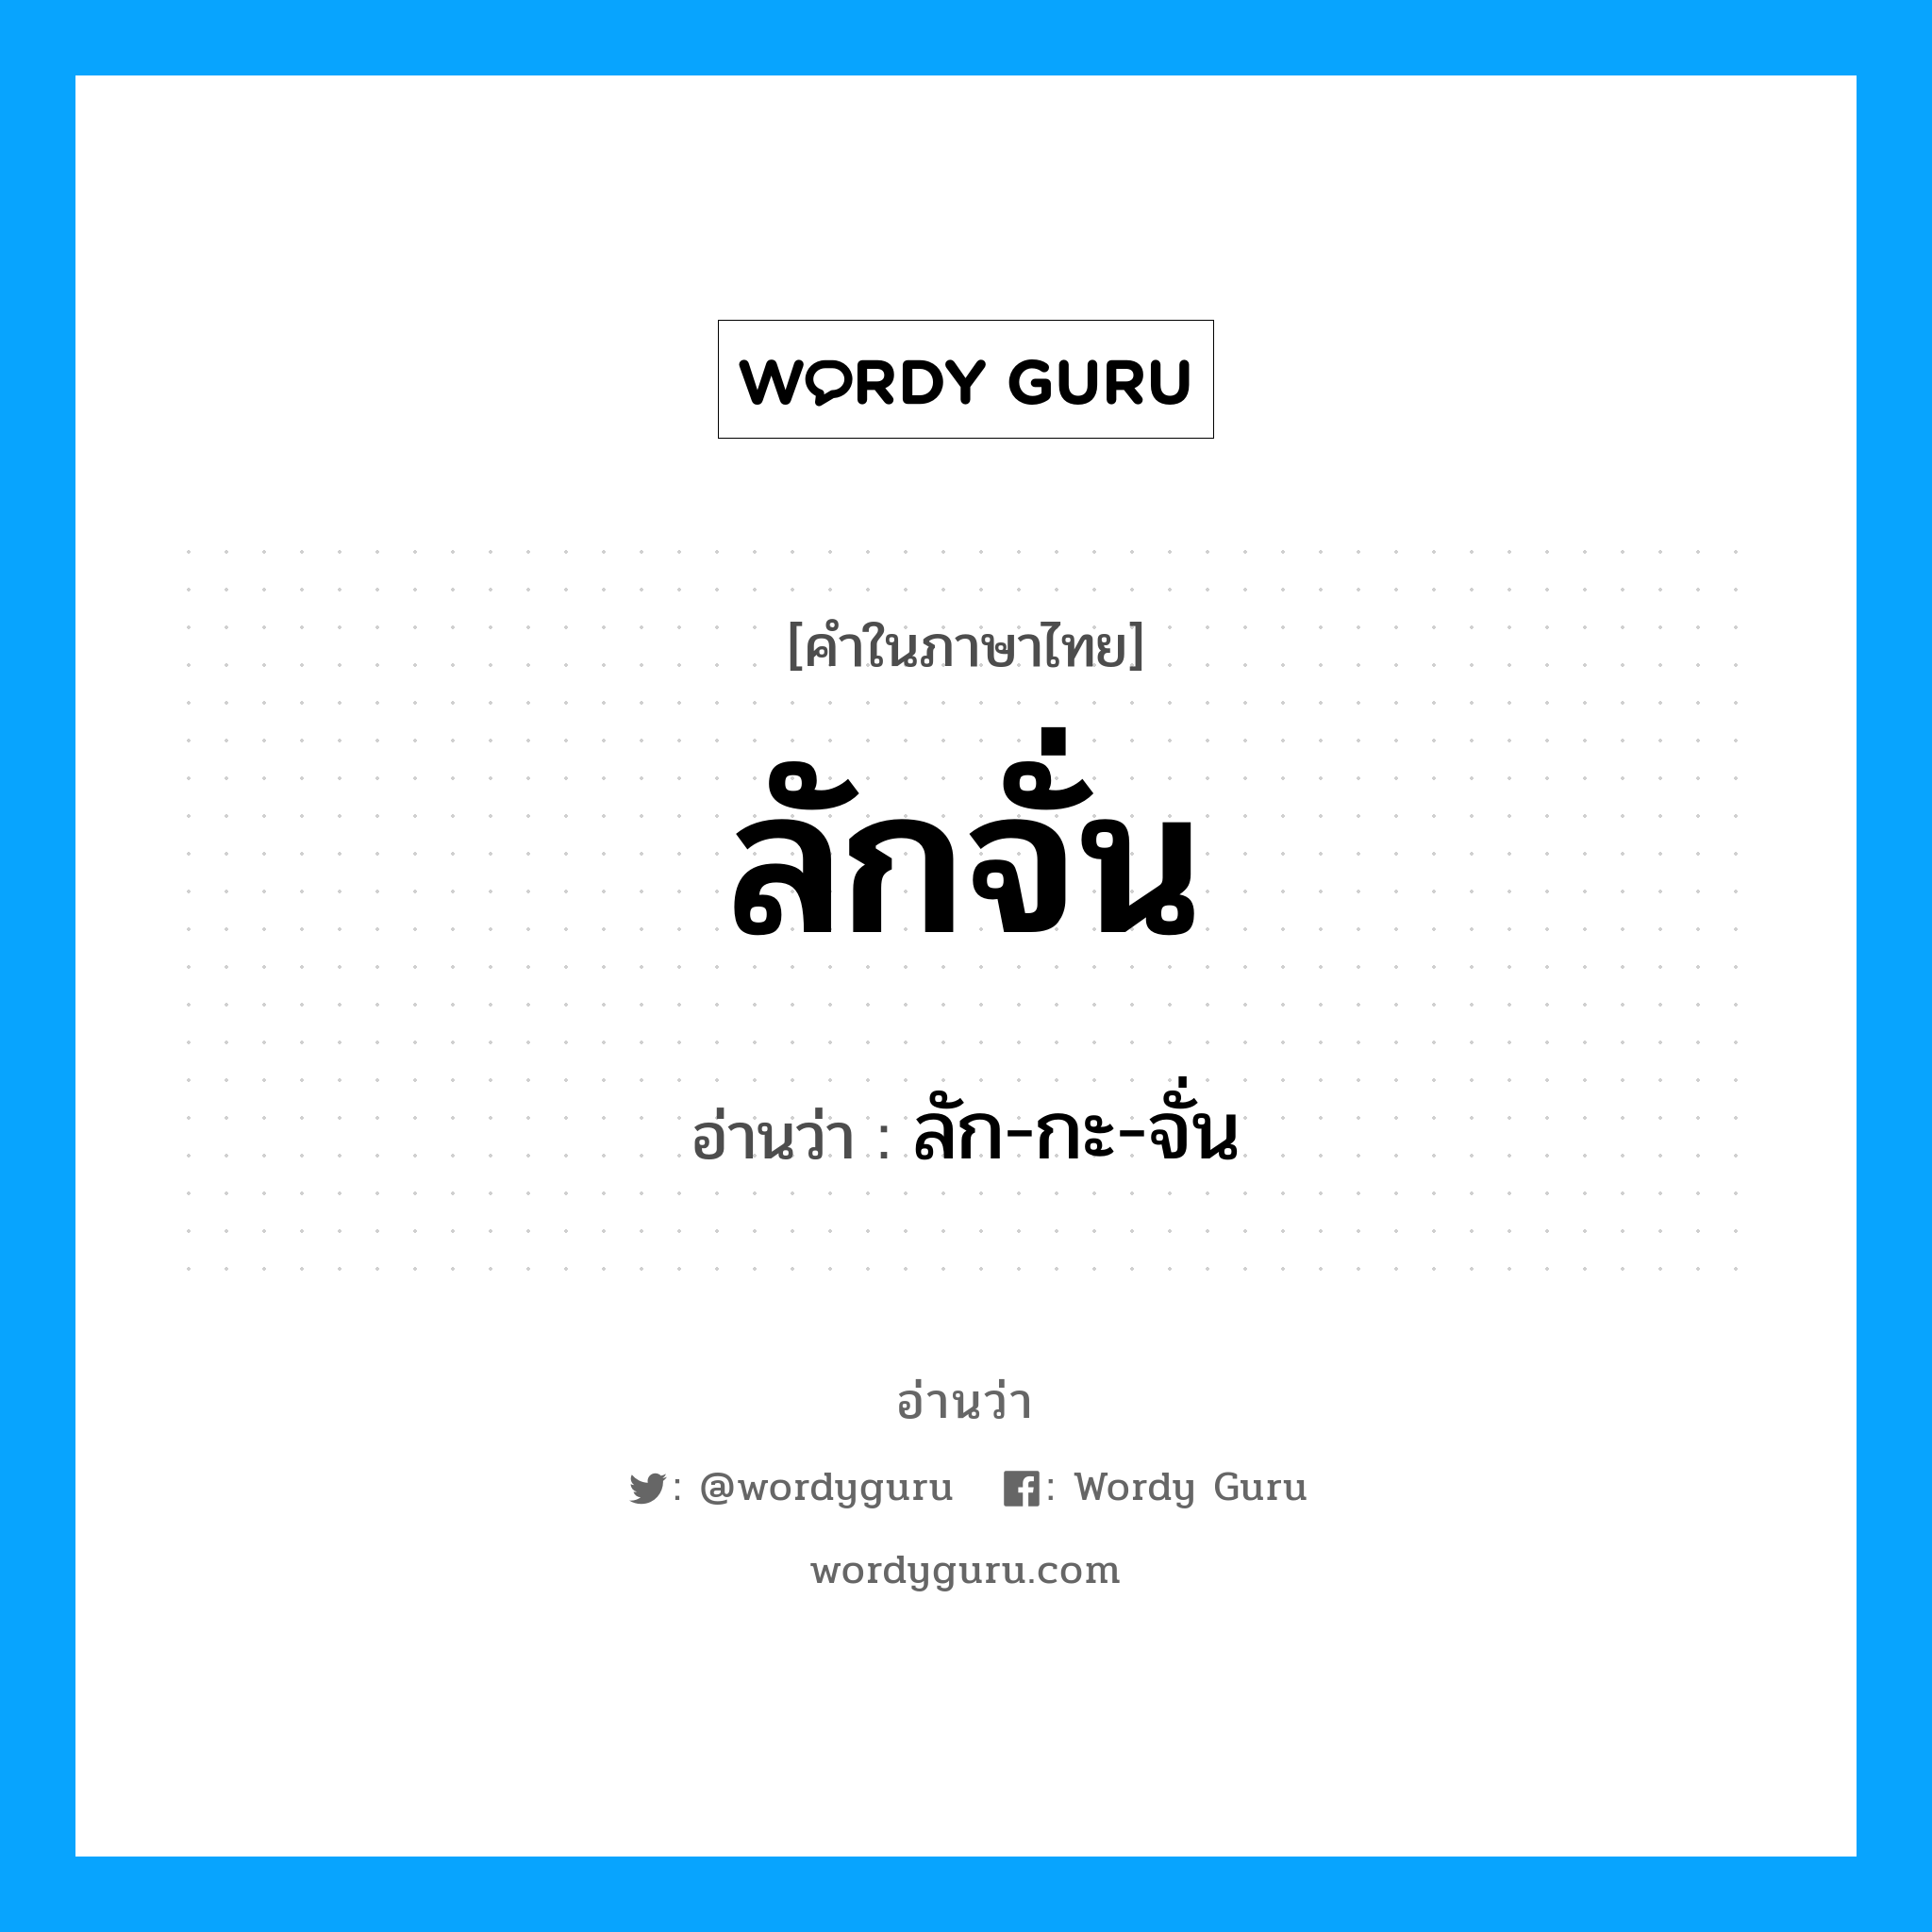 ลัก-กะ-จั่น เป็นคำอ่านของคำไหน?, คำในภาษาไทย ลัก-กะ-จั่น อ่านว่า ลักจั่น